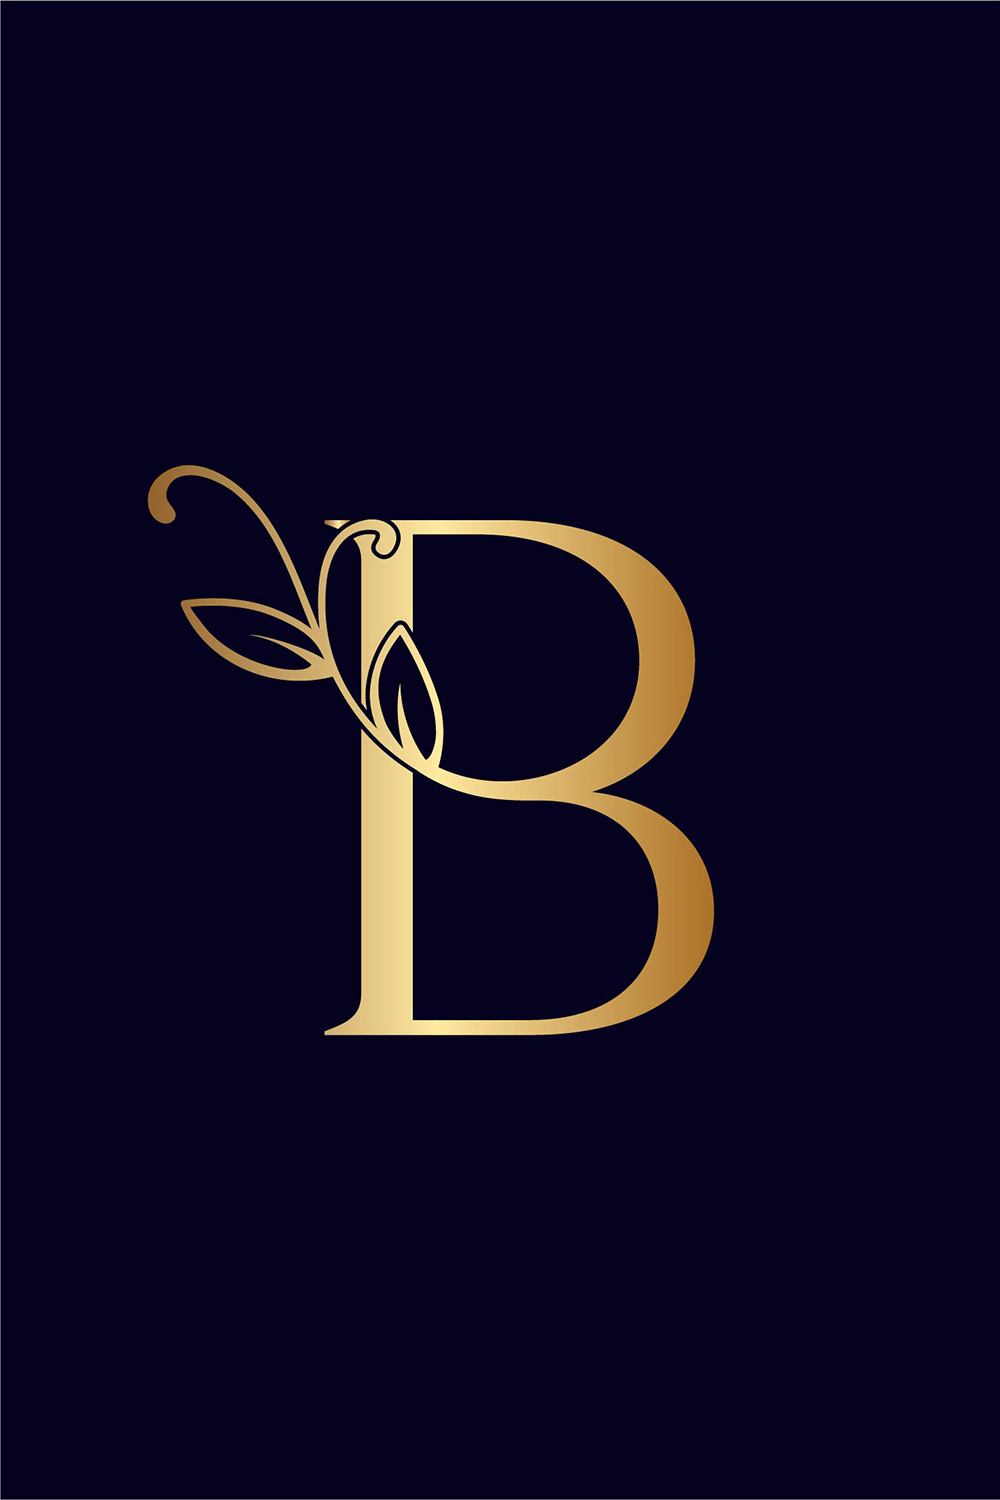 Floral Logo Design Letter B Pinterest image.